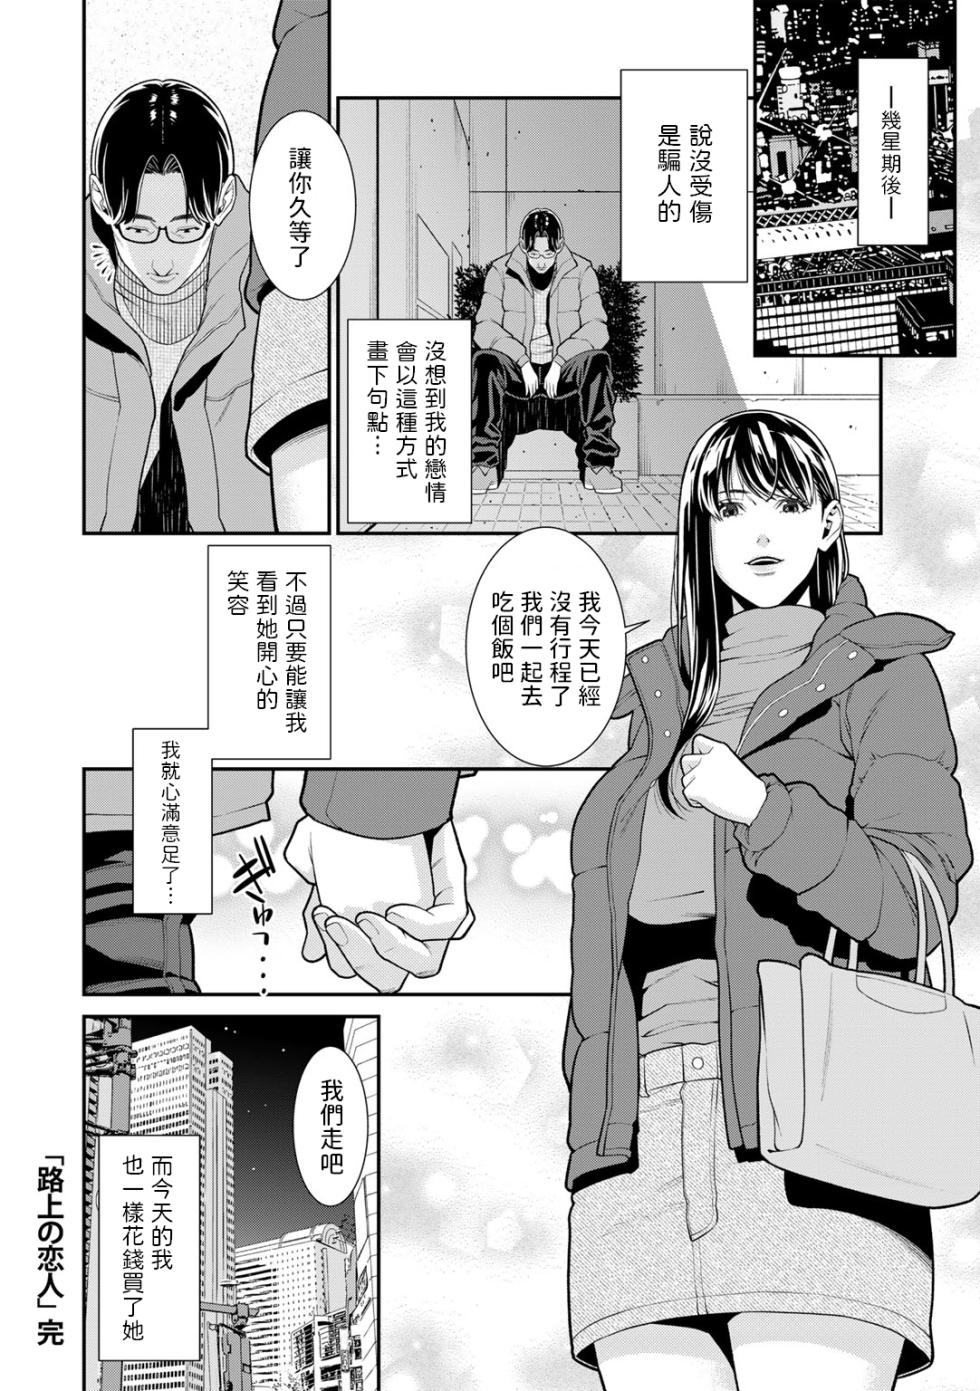 [終焉]  路上の恋人  (COMICグーチョ vol.15)  中文翻譯 - Page 20